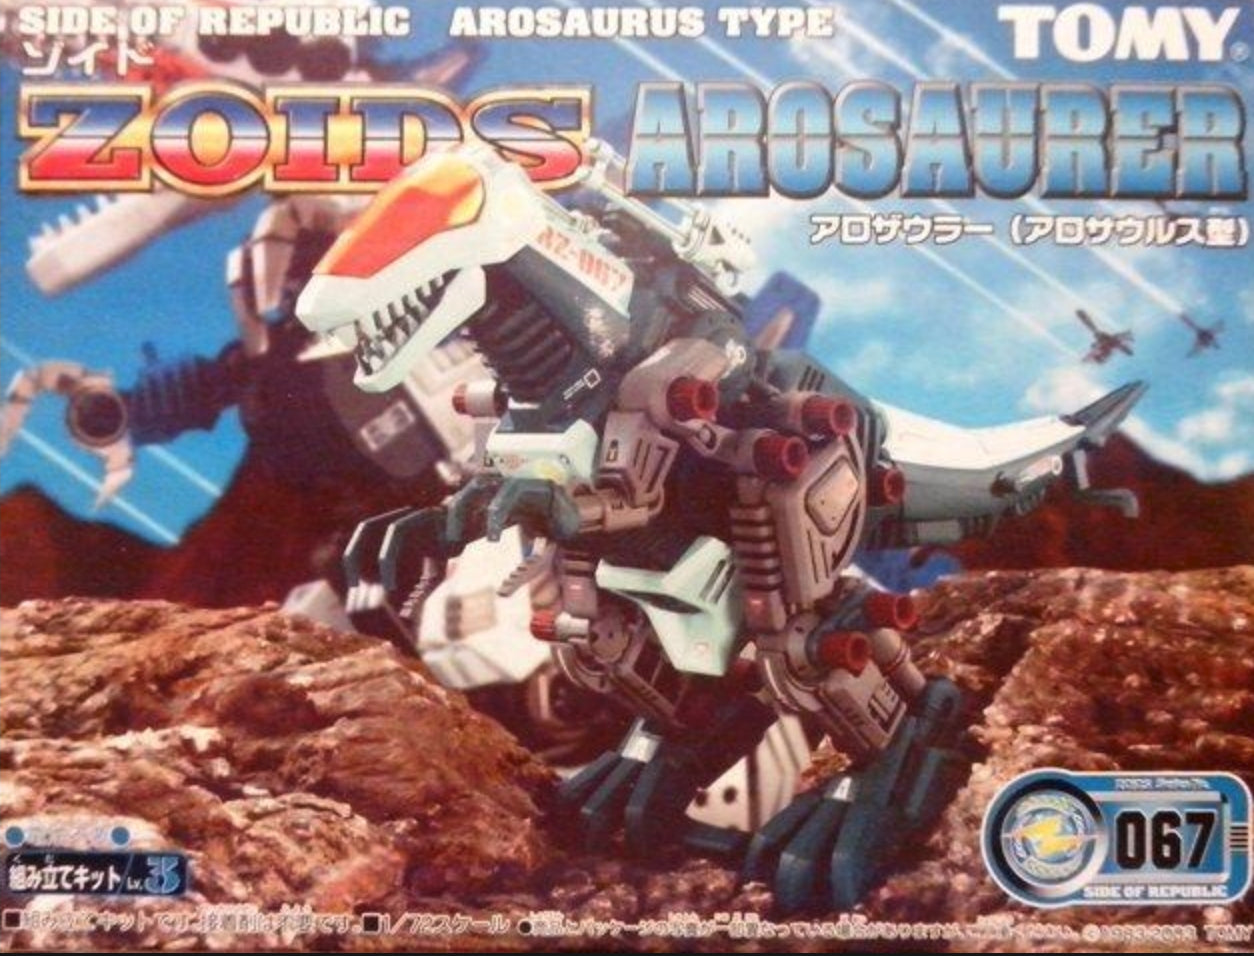 Tomy Zoids 1/72 RZ-067 Arosaurer Type Model Kit Figure